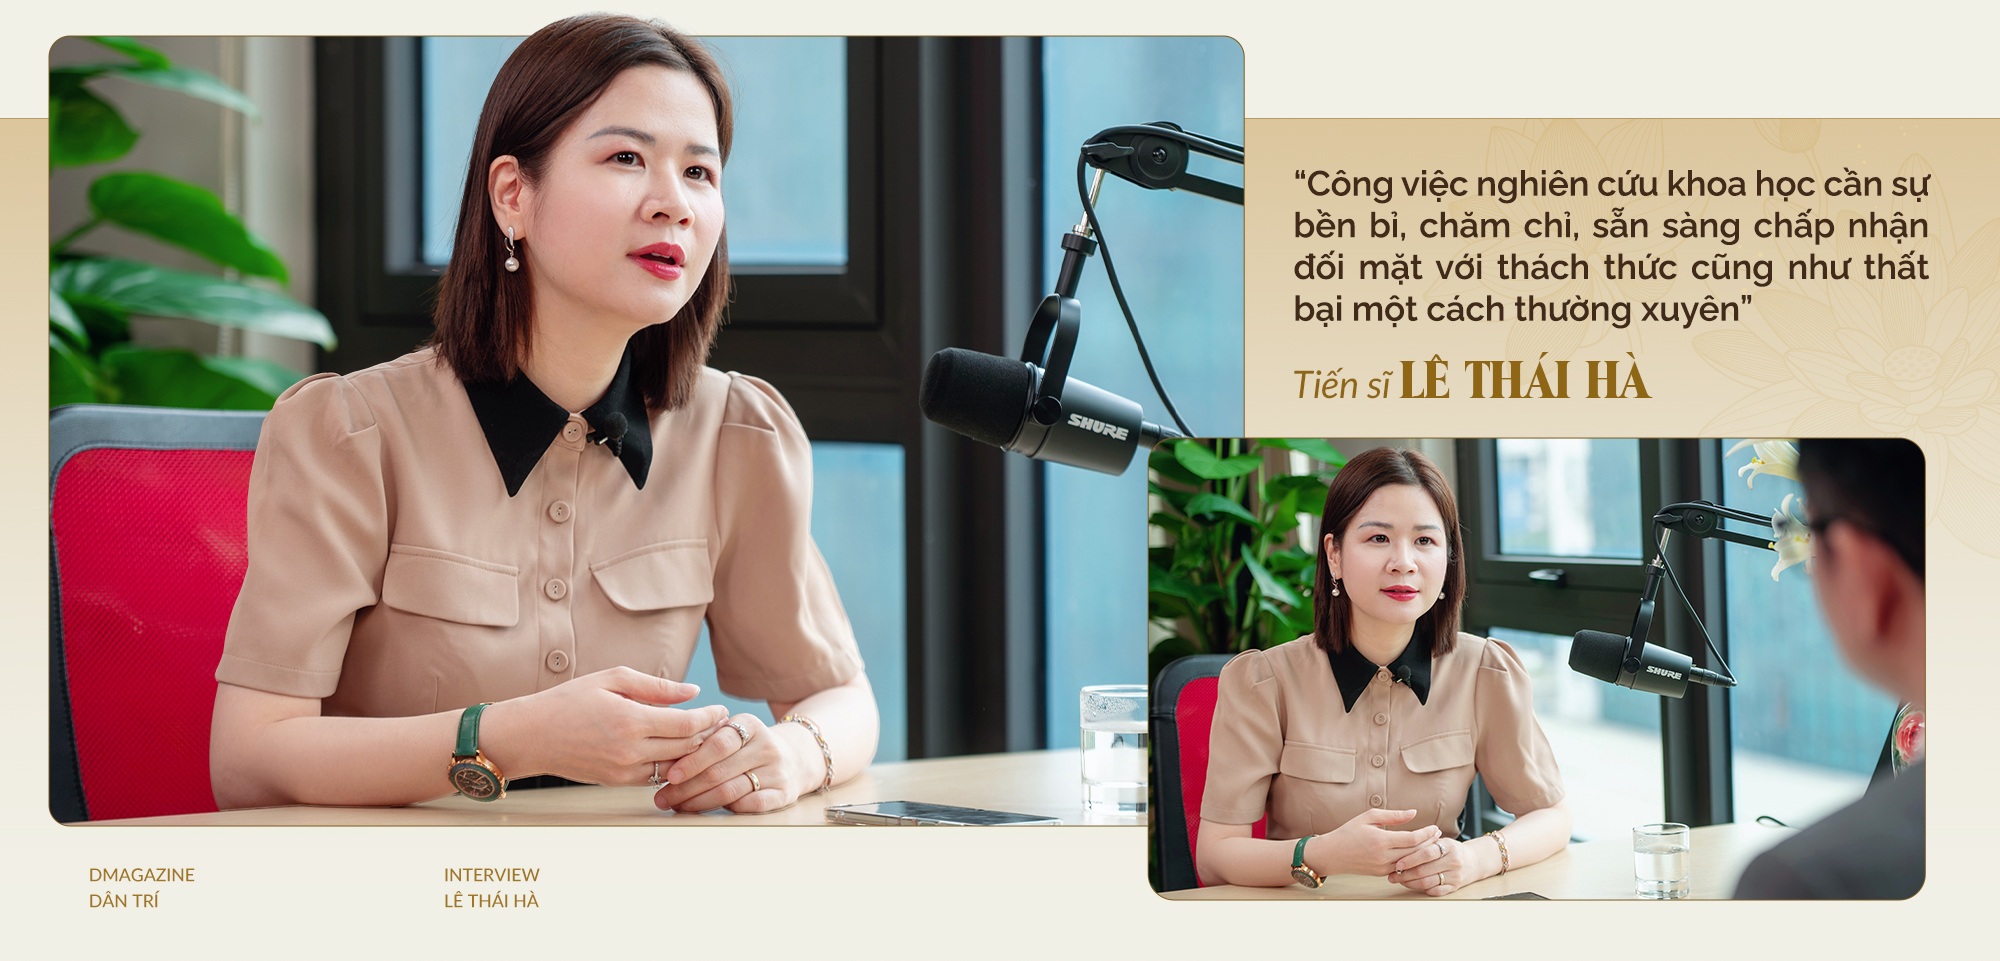 Nữ TS Việt trong top ảnh hưởng thế giới, điều hành Quỹ khoa học triệu đô - 6